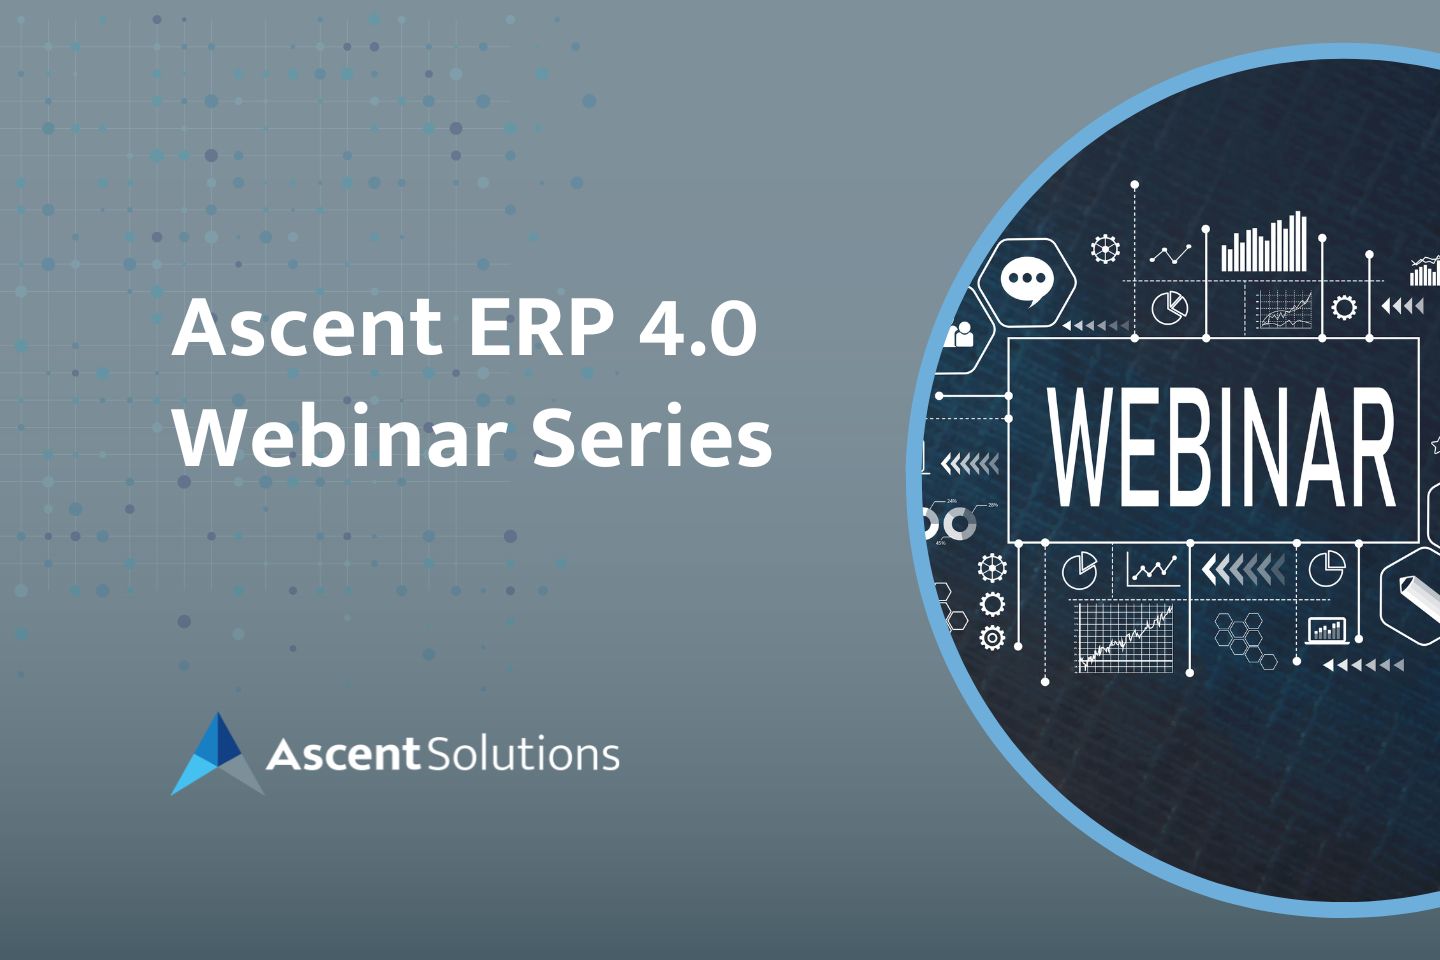 Ascent ERP 4.0 Webinar Series